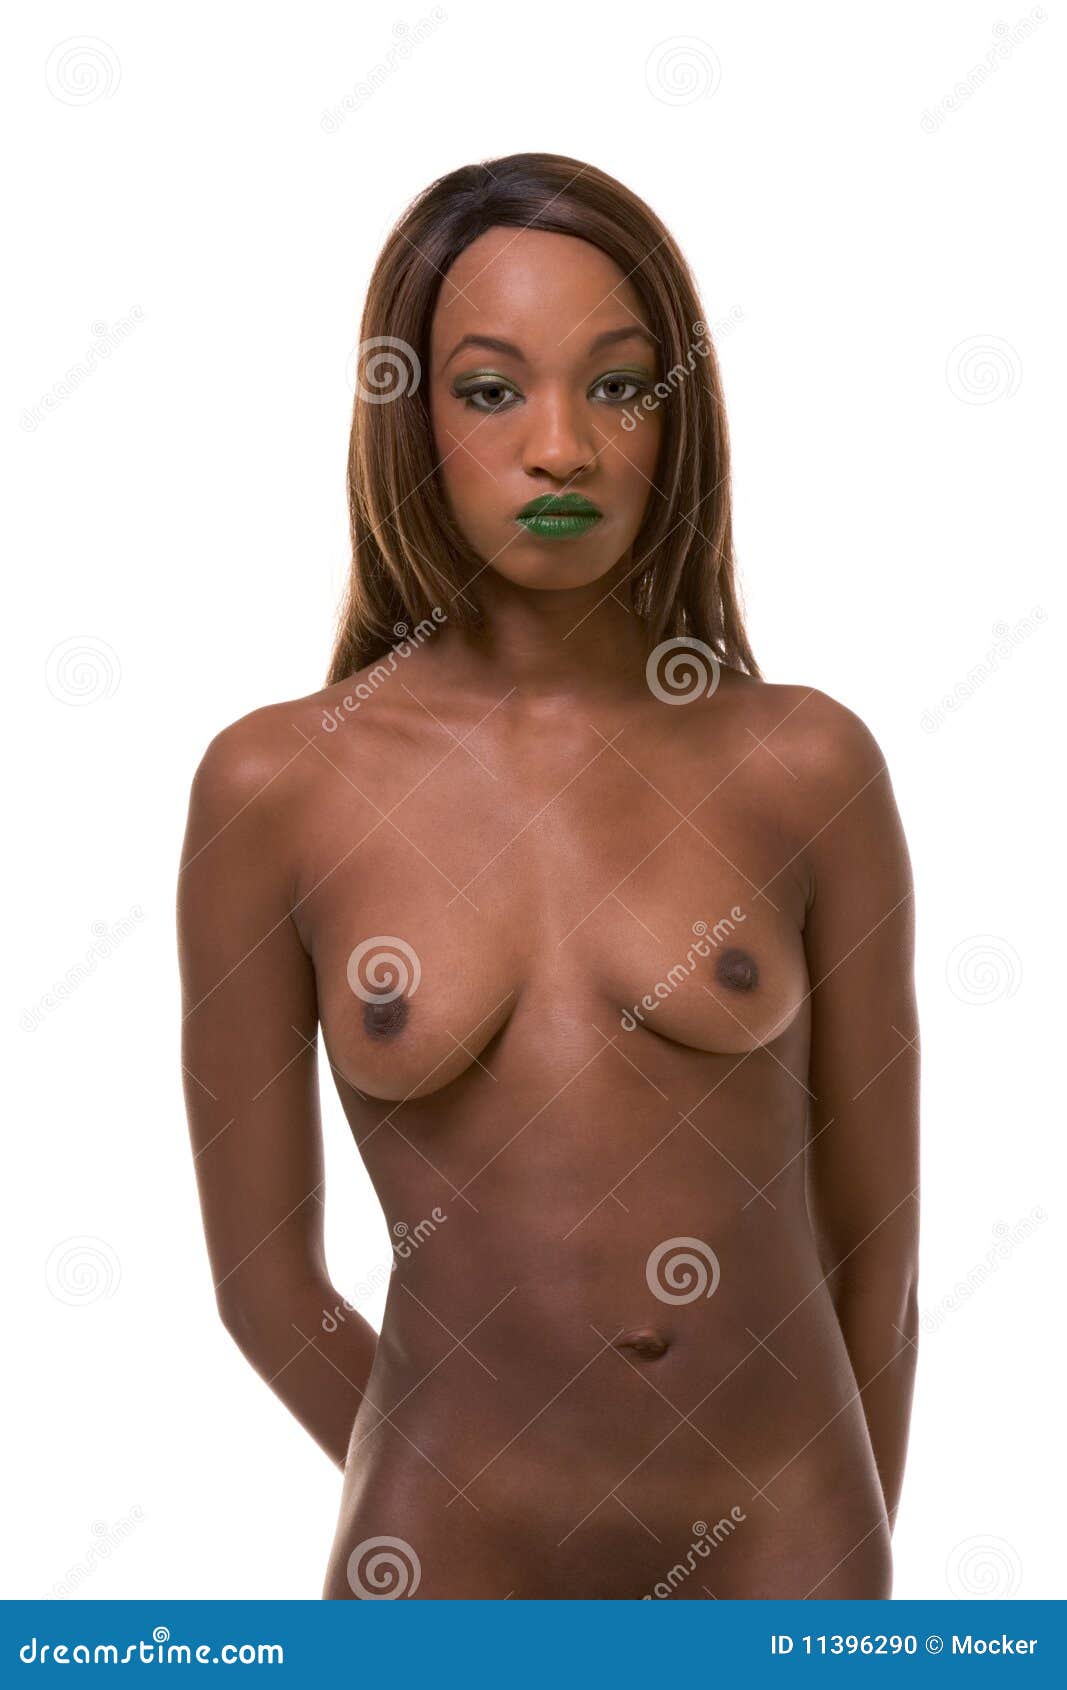 women black naked